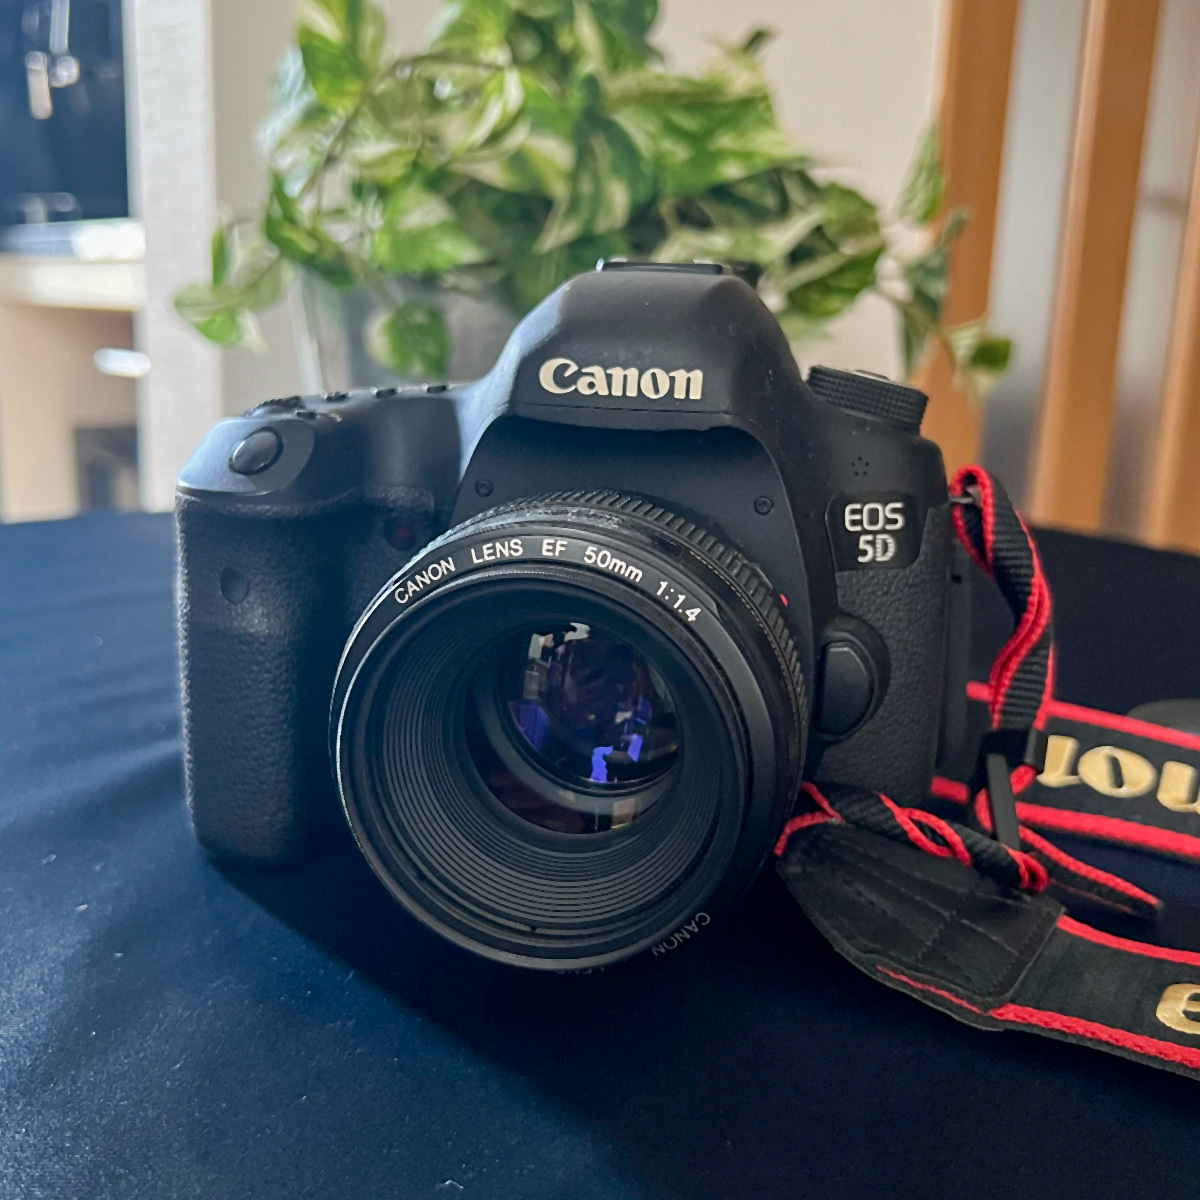 Canon EOS 5D Mark III デジタル一眼レフカメラ + 単焦点レンズ EF50mm F1.4 USM 他リグなどおまけ多数